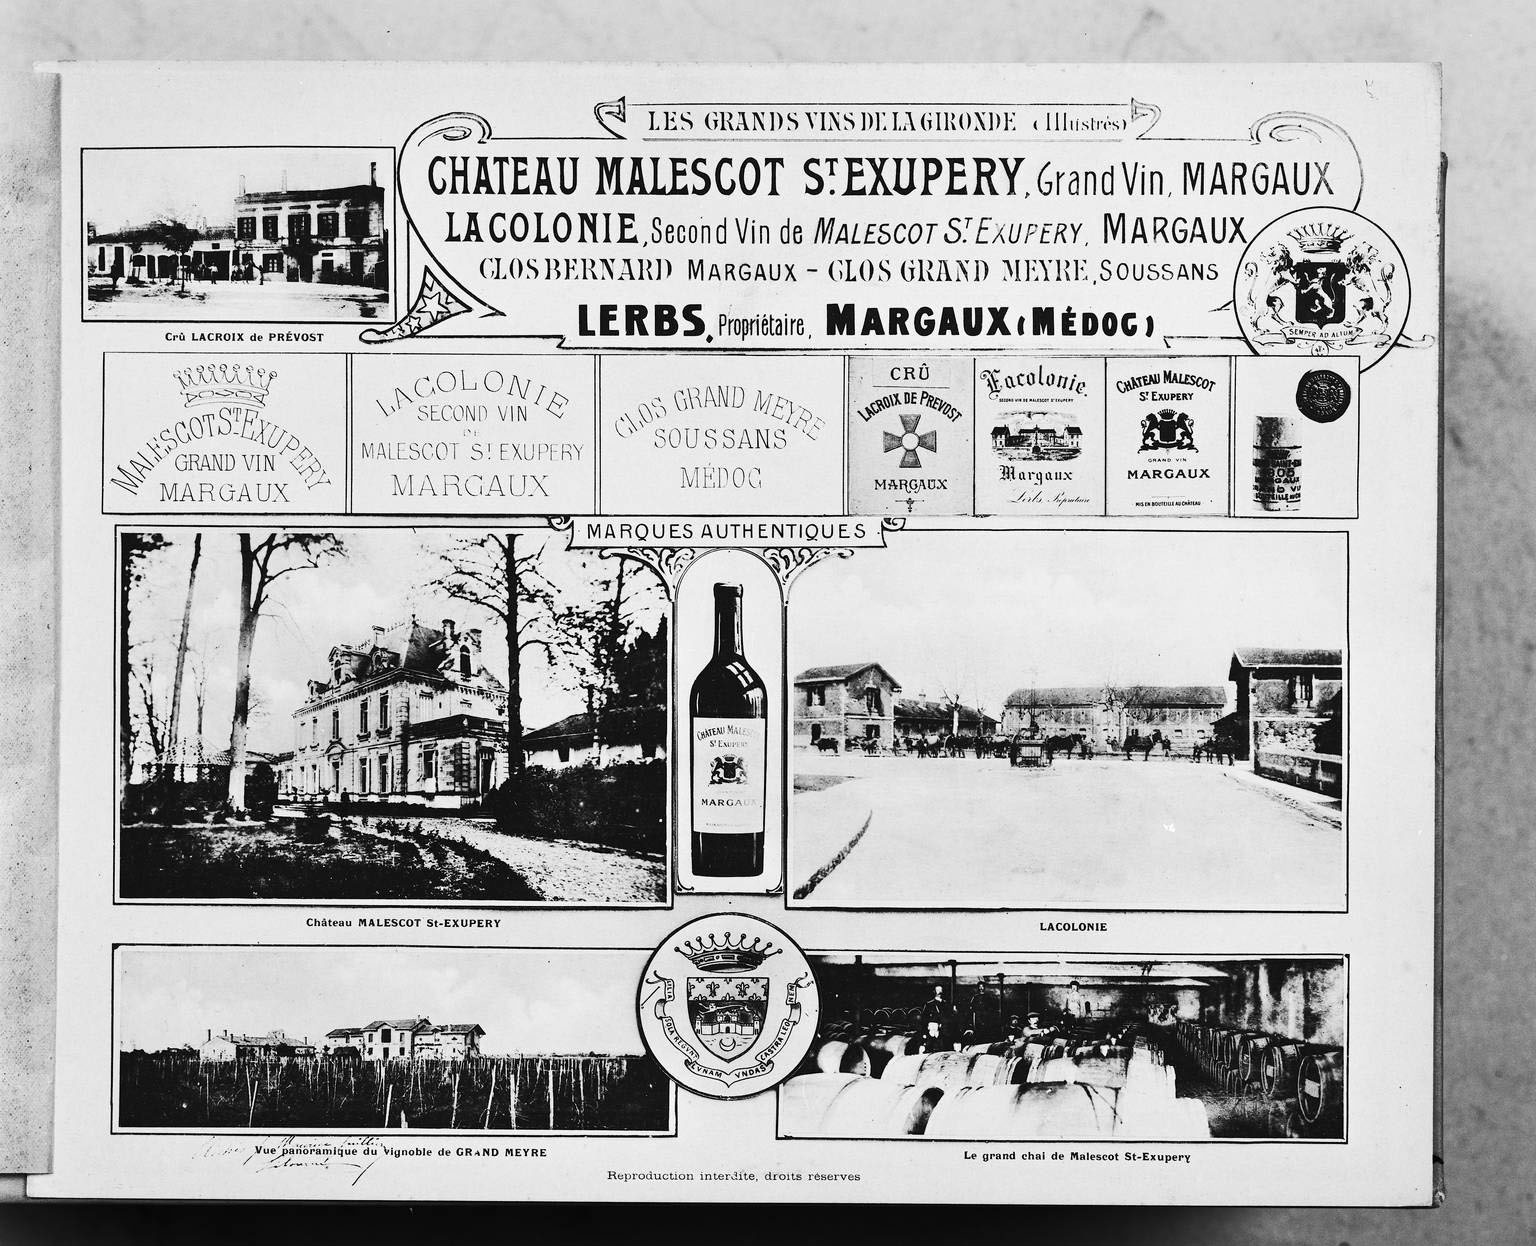 Planche de photographies : crû Lacroix de Prévost, château Malescot St-Exupéry, Lacolonie, vue panoramique du vignoble du Grand Meyre, le grand chai de Malescot St-Exupéry.